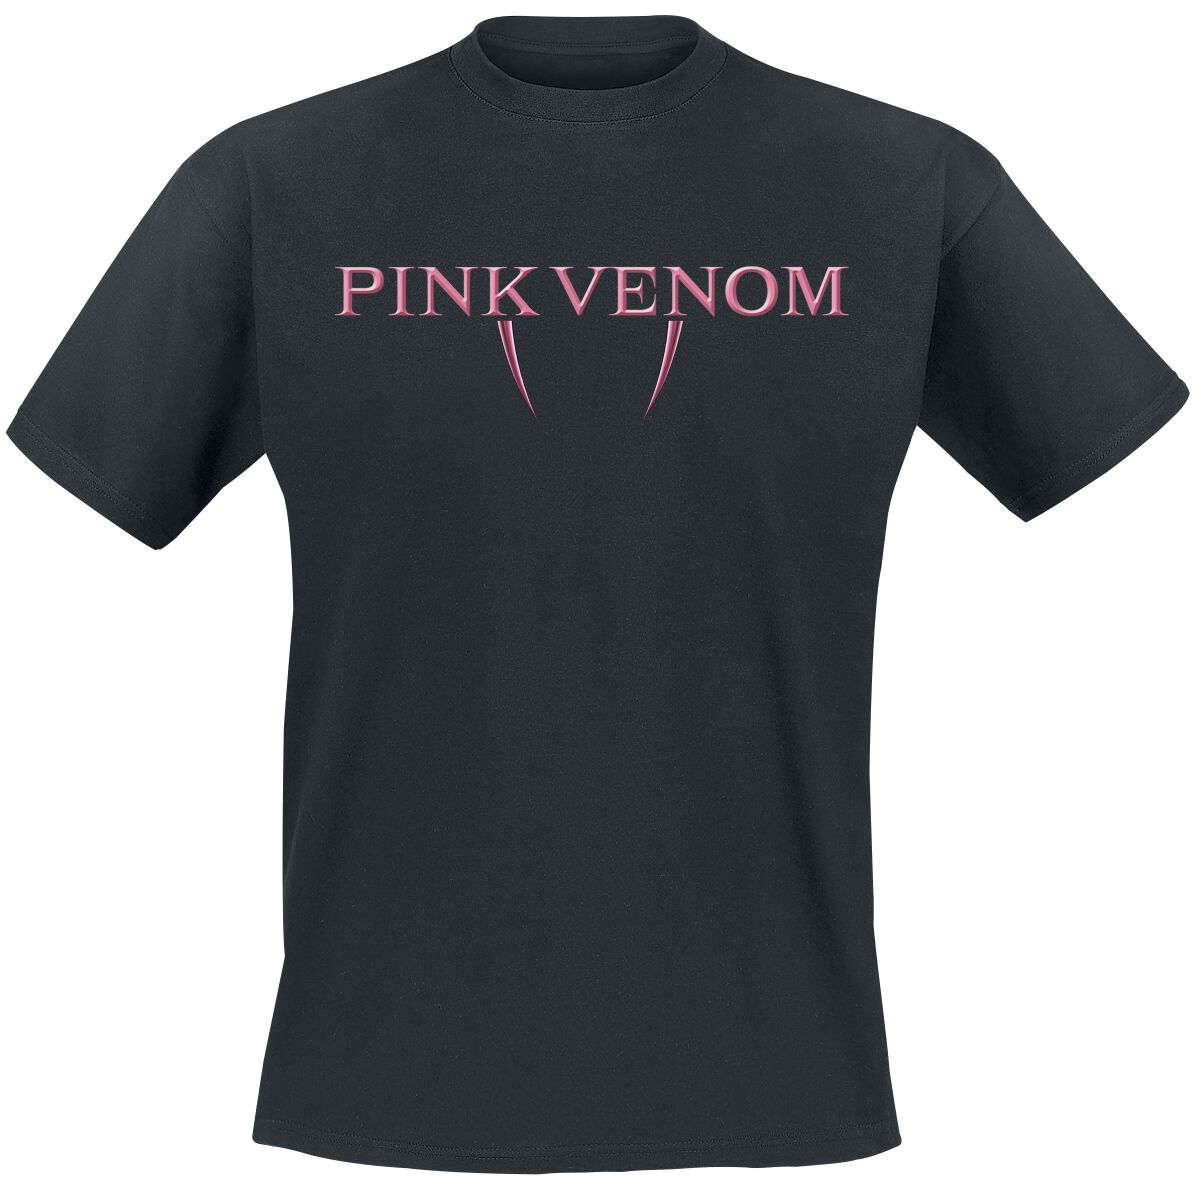 Blackpink T-Shirt - Pink Venom Fangs - M bis XL - für Männer - Größe XL - schwarz  - Lizenziertes Merchandise!